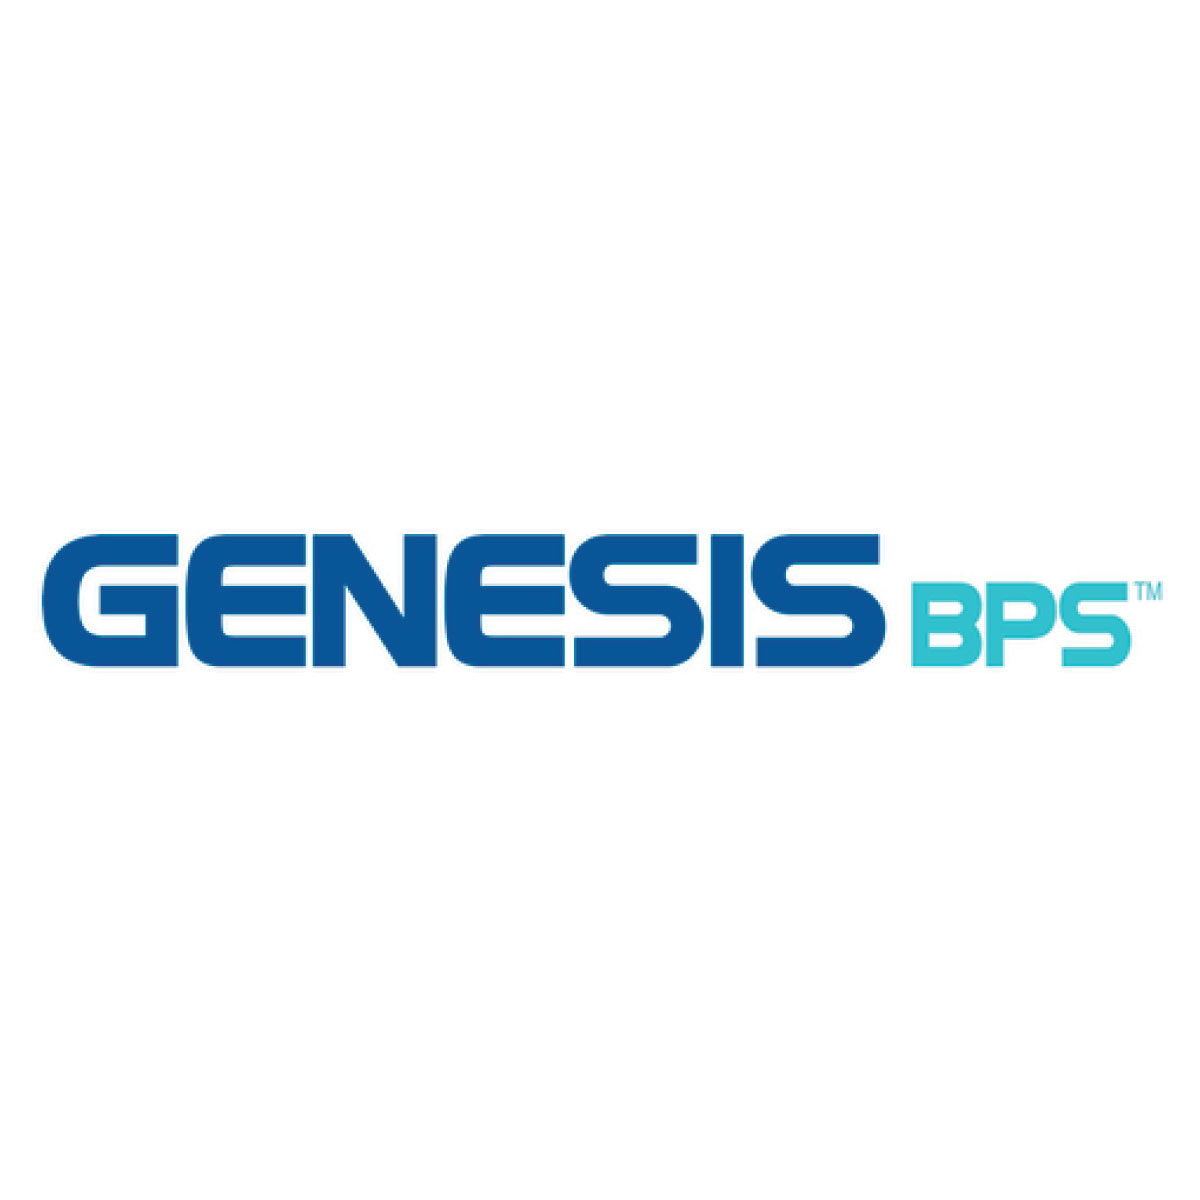 Genesis BPS